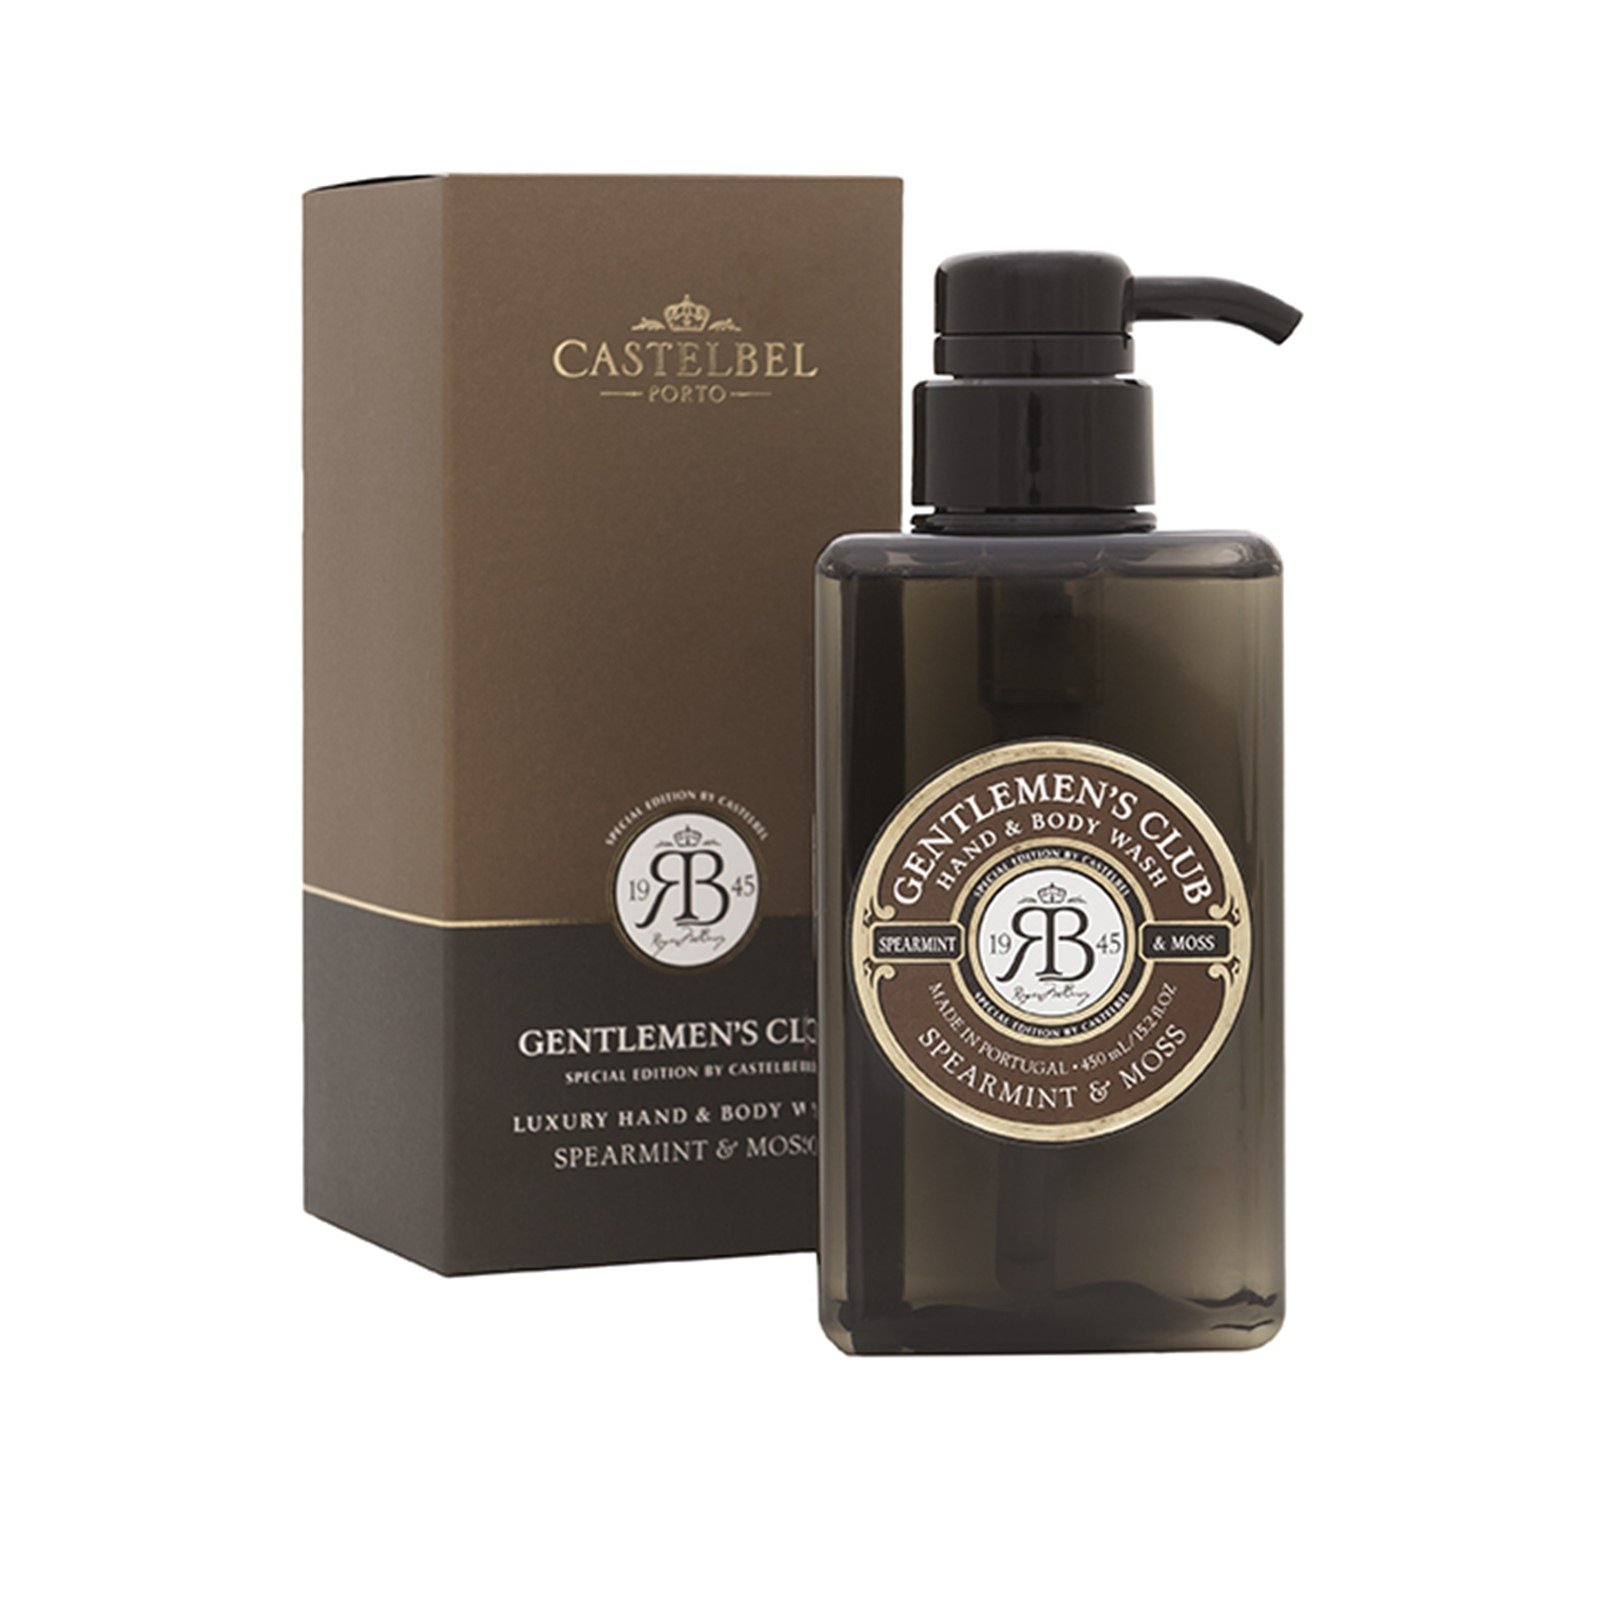 Castelbel Gentlemen's Club Spearmint & Moss Hand & Body Wash 450ml